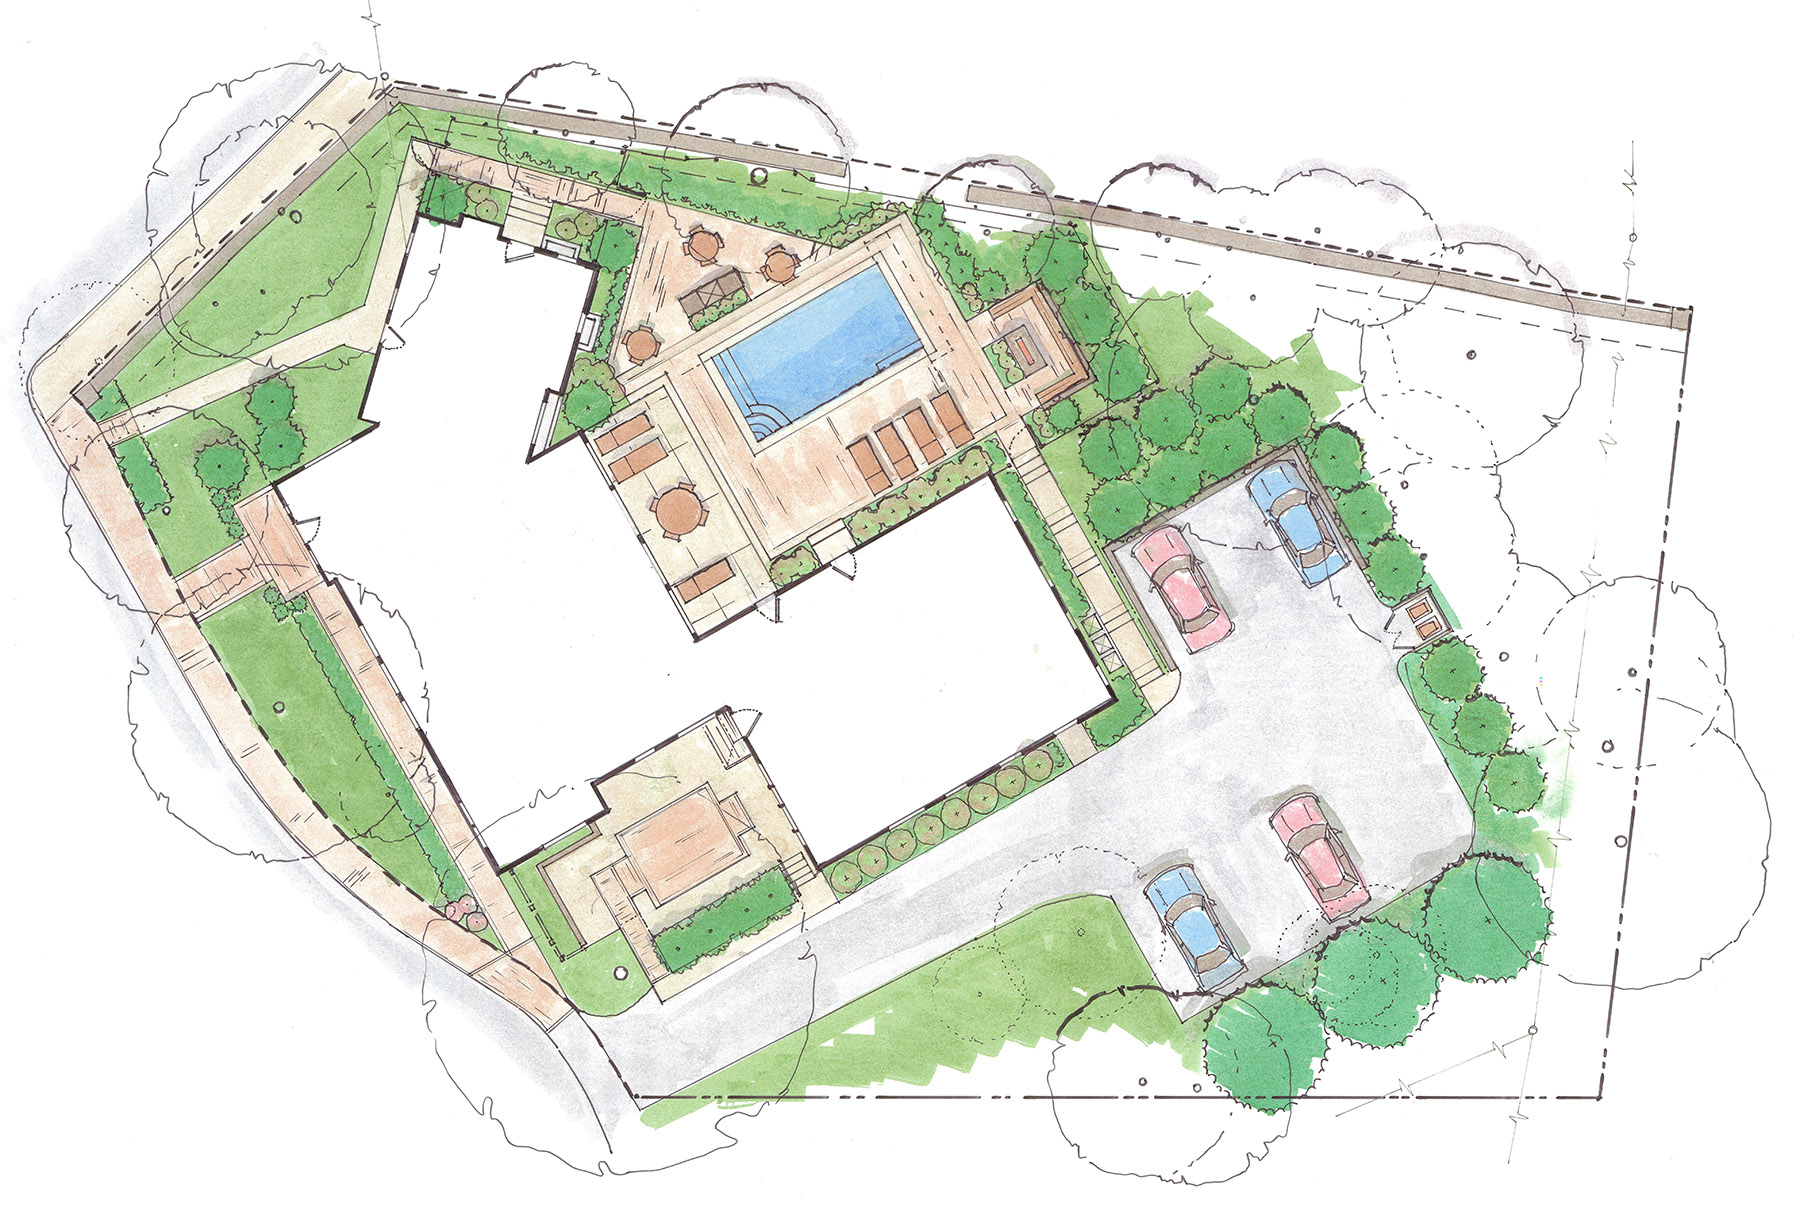 Oakhurst_Hall_Conceptual_Plan_sketch_landscape_design.jpg